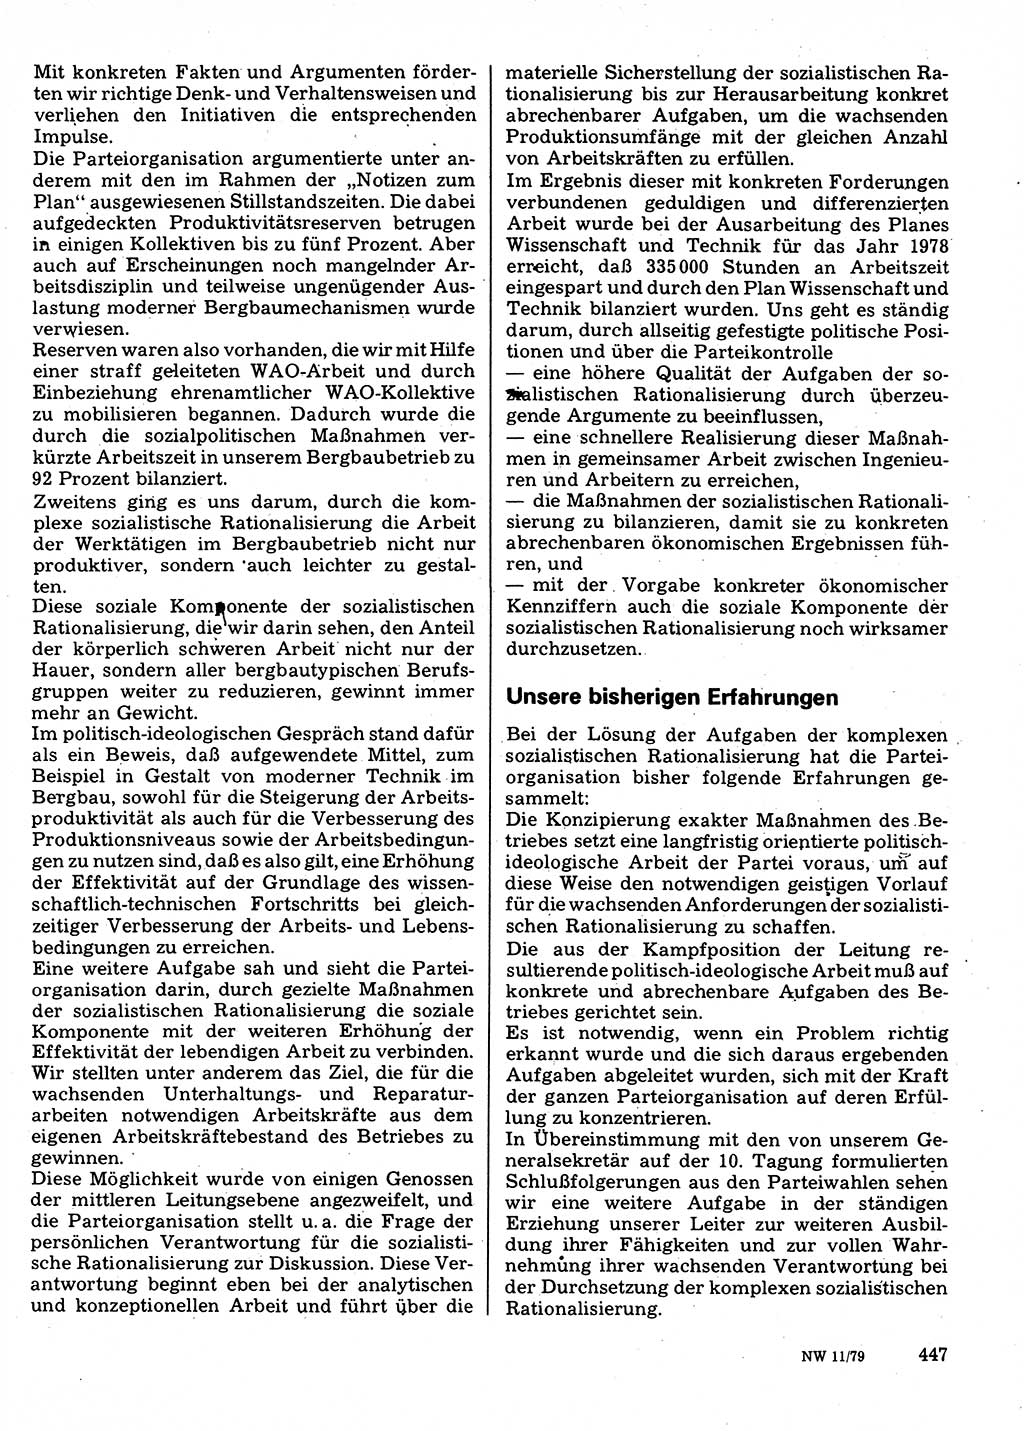 Neuer Weg (NW), Organ des Zentralkomitees (ZK) der SED (Sozialistische Einheitspartei Deutschlands) für Fragen des Parteilebens, 34. Jahrgang [Deutsche Demokratische Republik (DDR)] 1979, Seite 447 (NW ZK SED DDR 1979, S. 447)